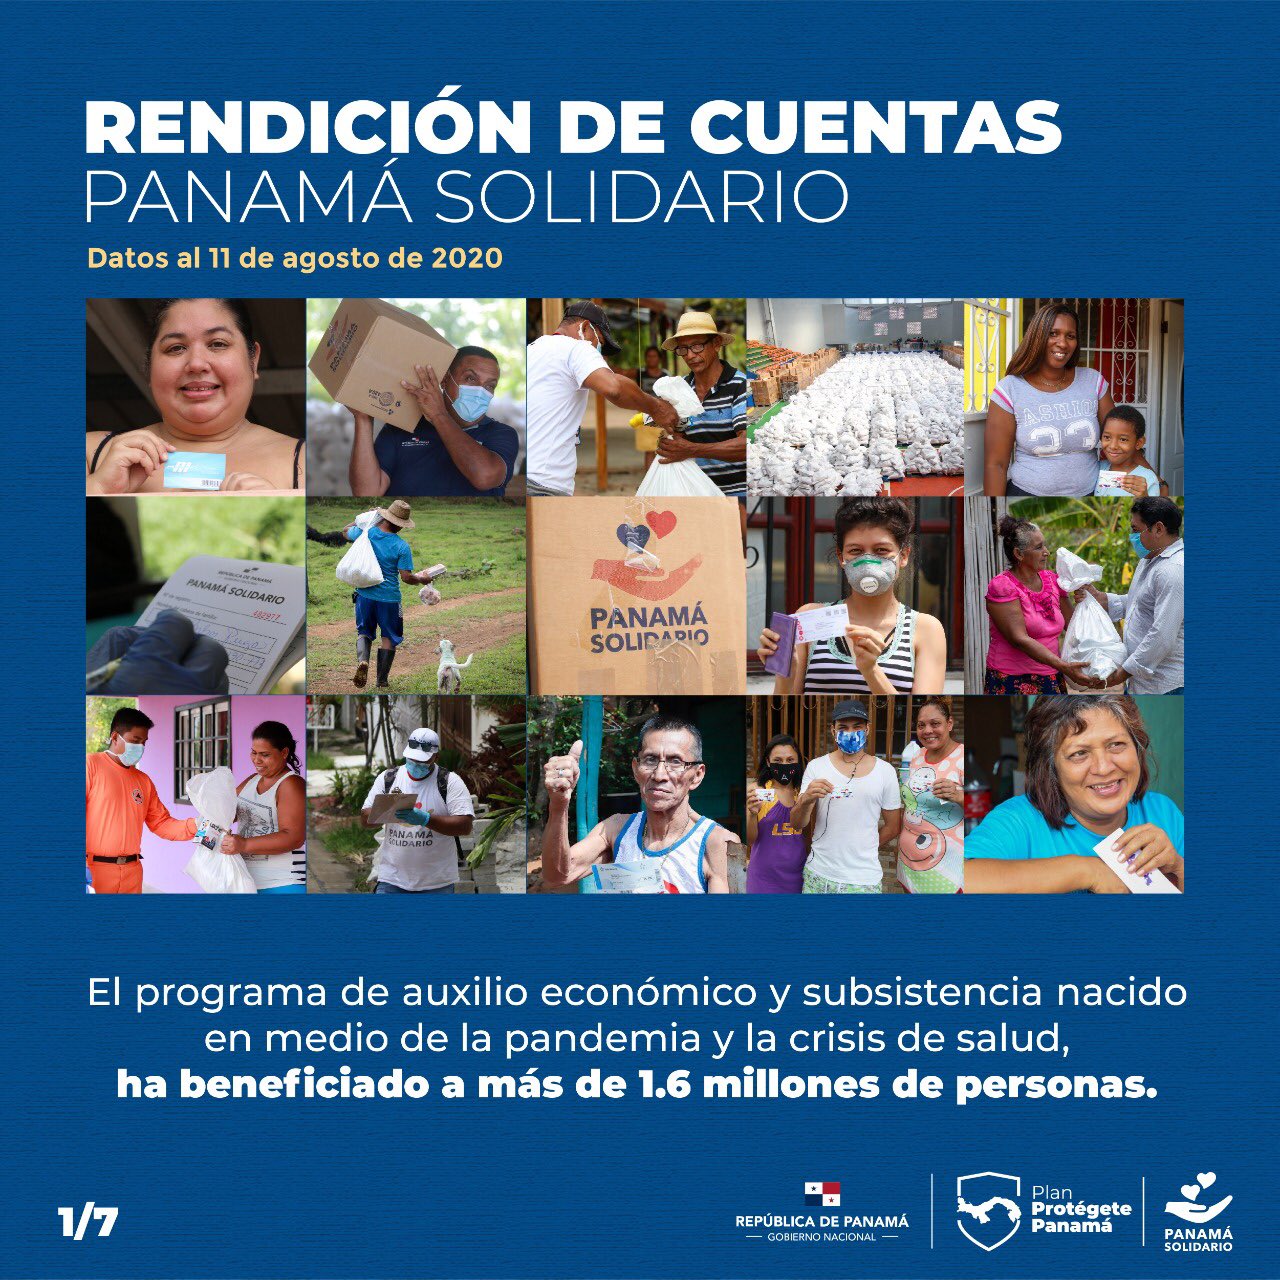 El Plan Panamá Solidario es un programa de auxilio económico y subsistencia en medio de la pandemia y crisis de salud, beneficiando a más de 1.6 millones de personas.